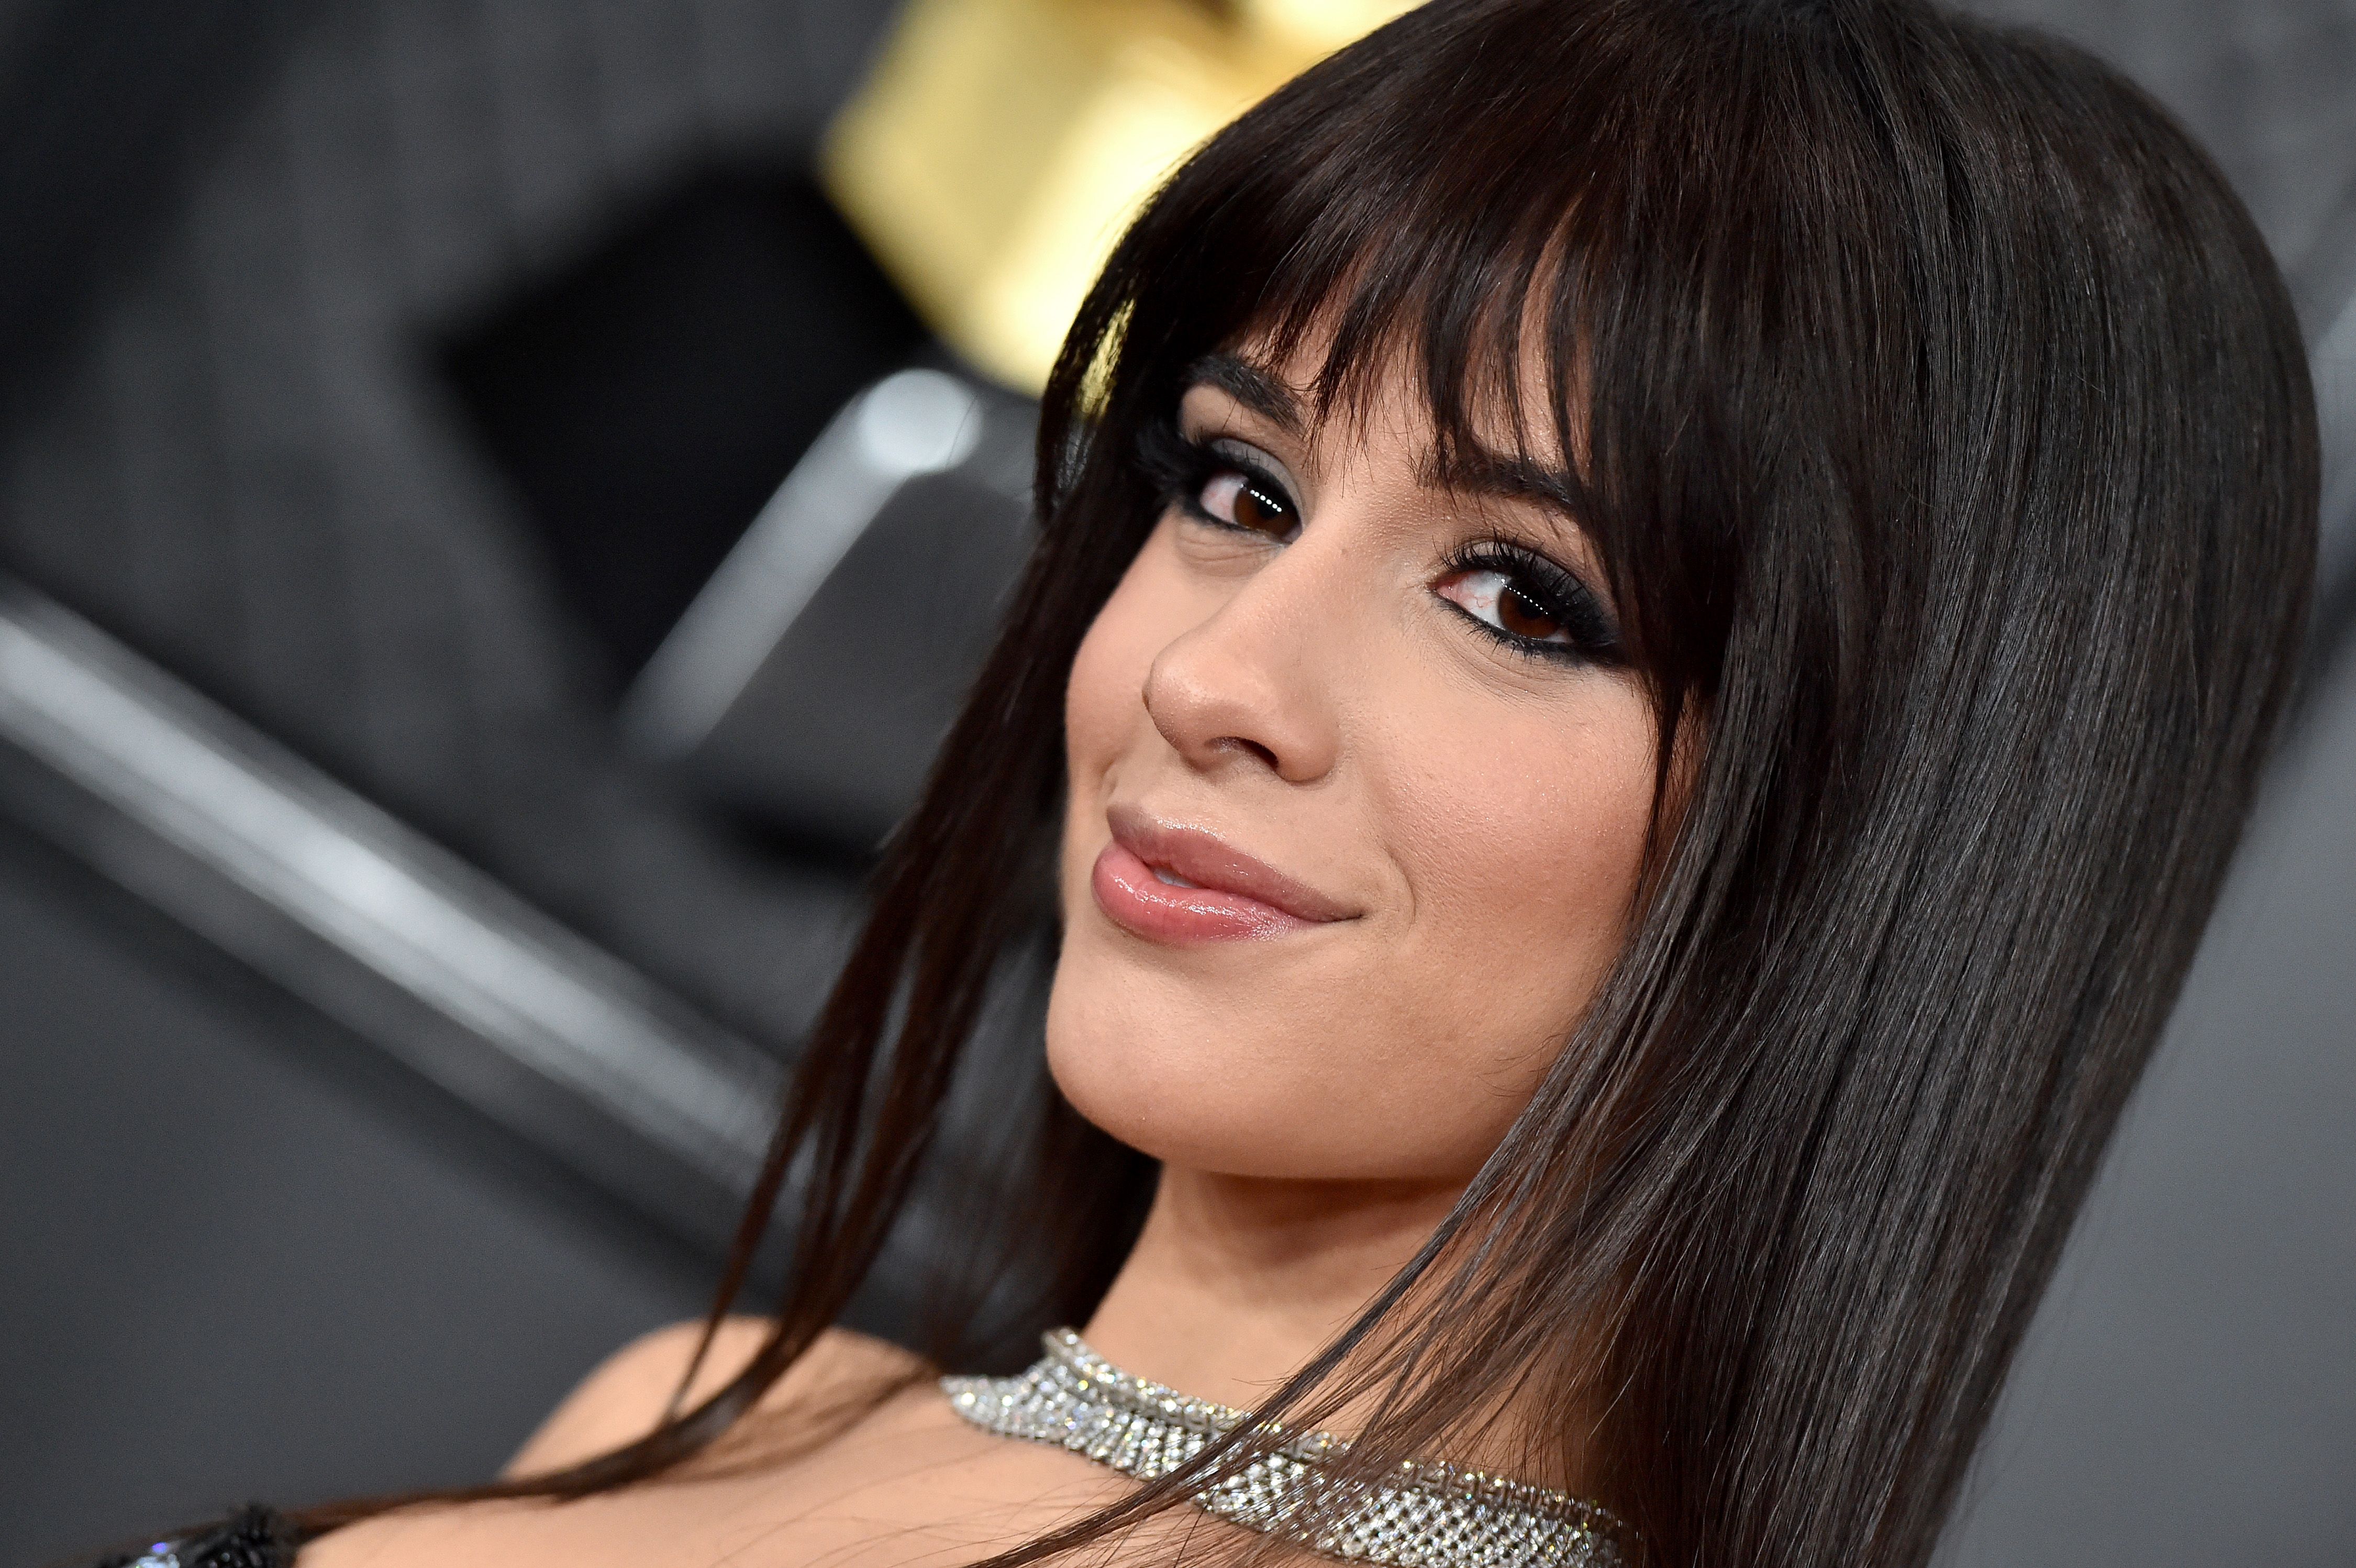 The £11.99 Mascara Camila Cabello Wore the Grammy Awards